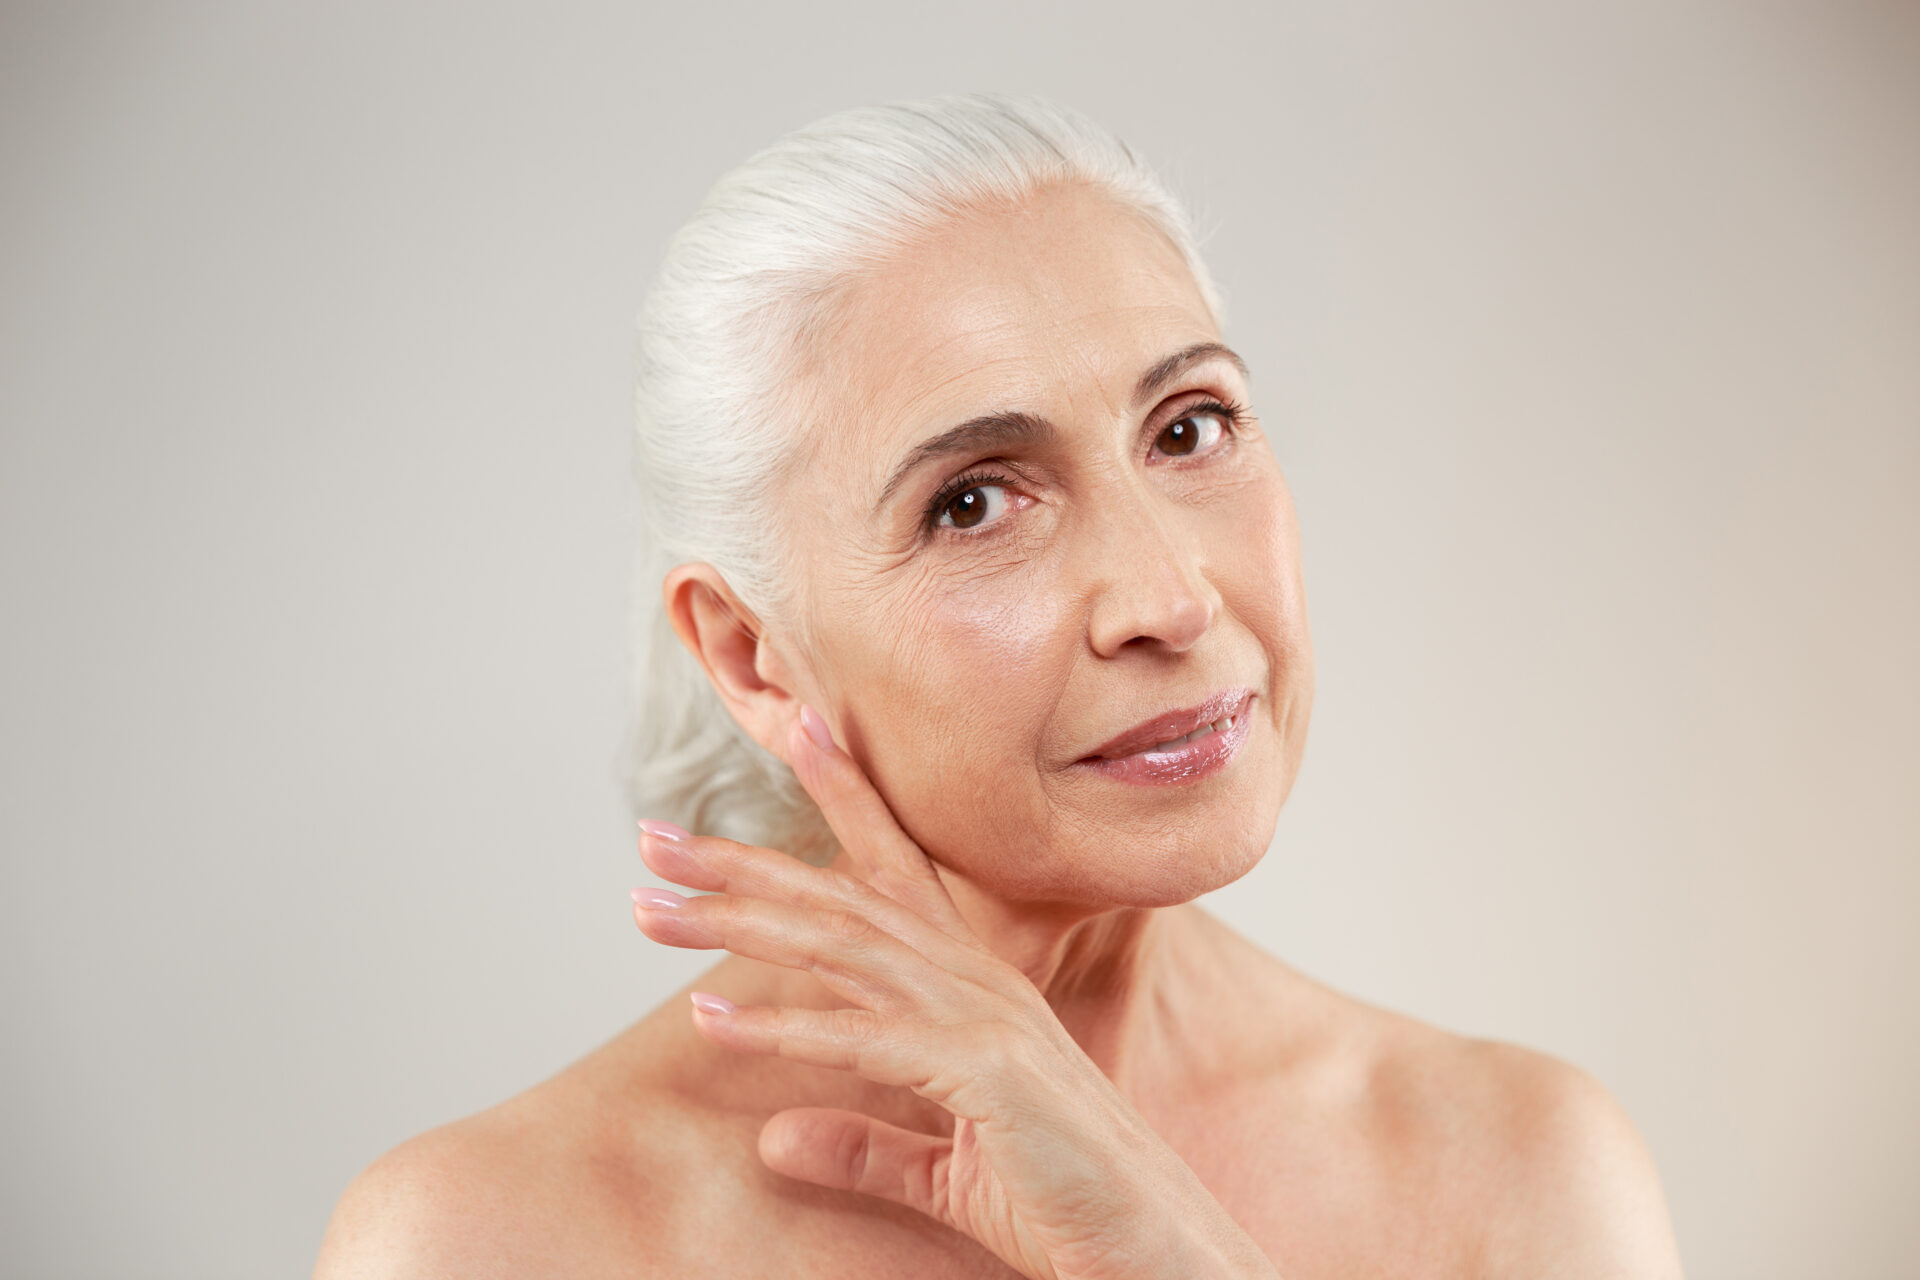 Immagine ritraente donna anziana che si vuole sottoporre a un trattamento di medicina estetica.